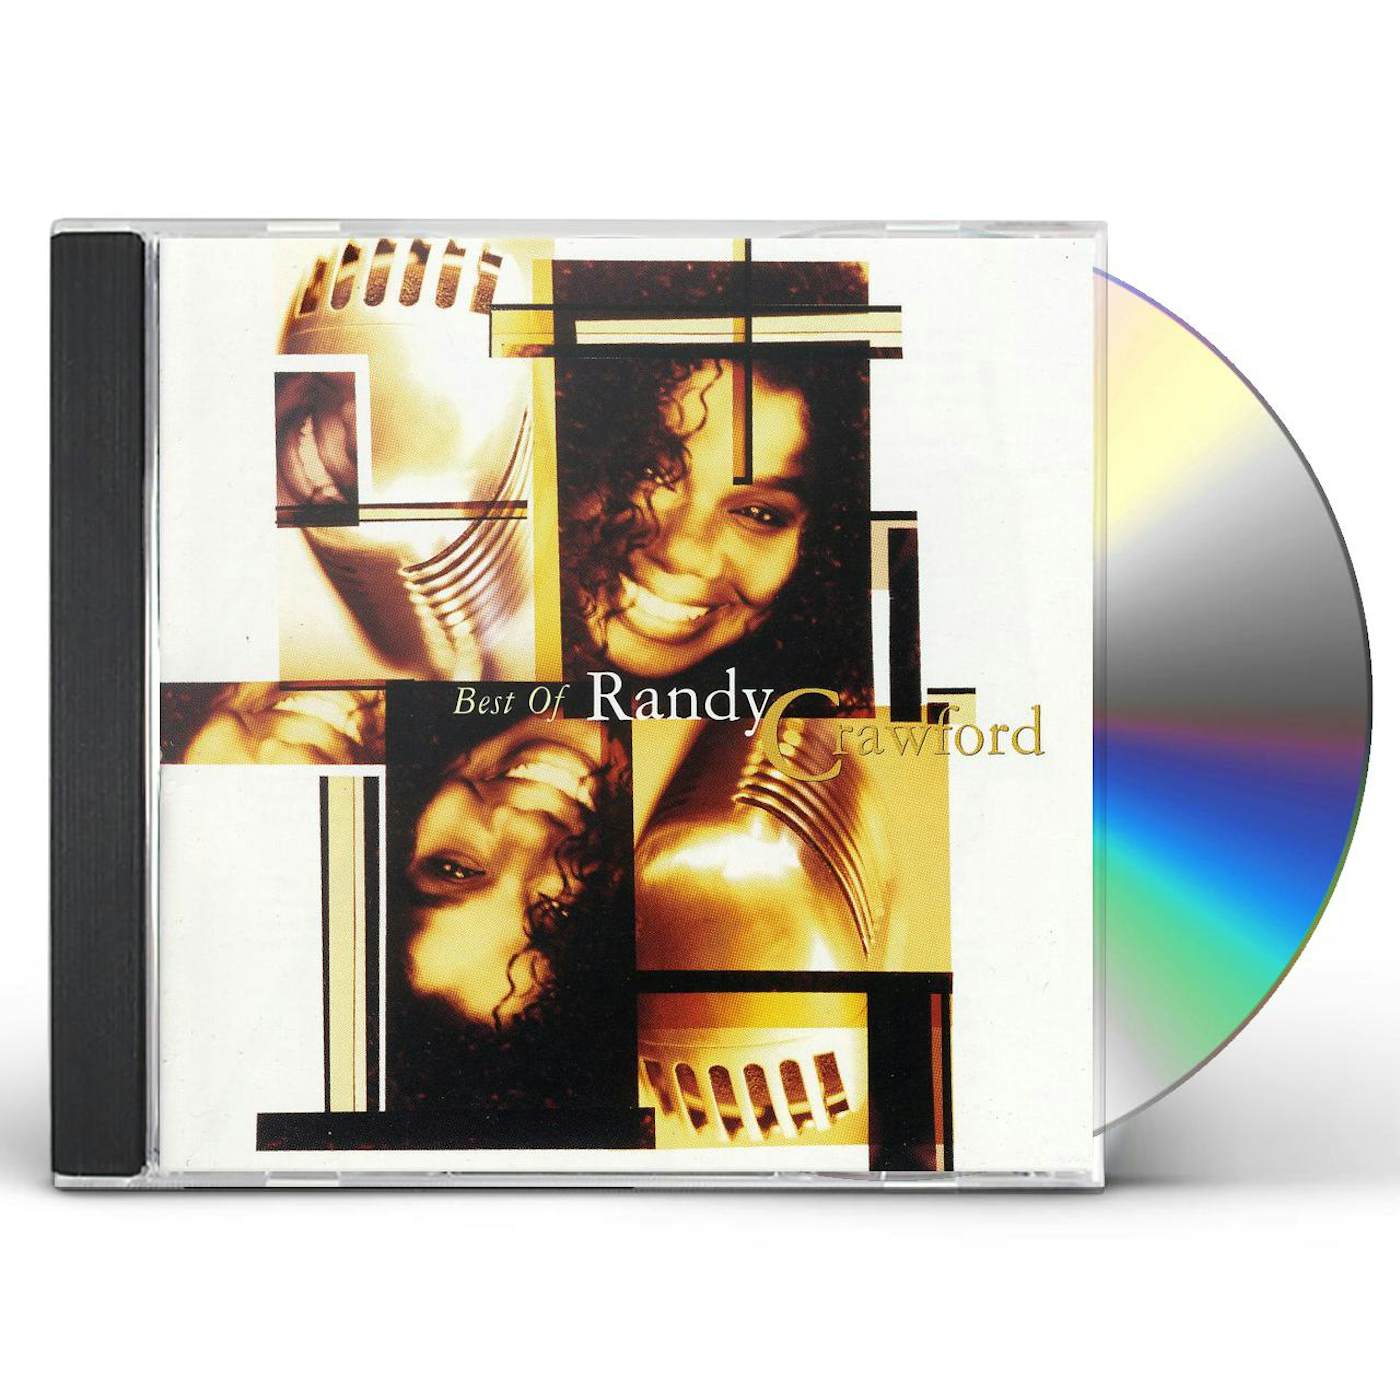 BEST OF RANDY CRAWFORD CD